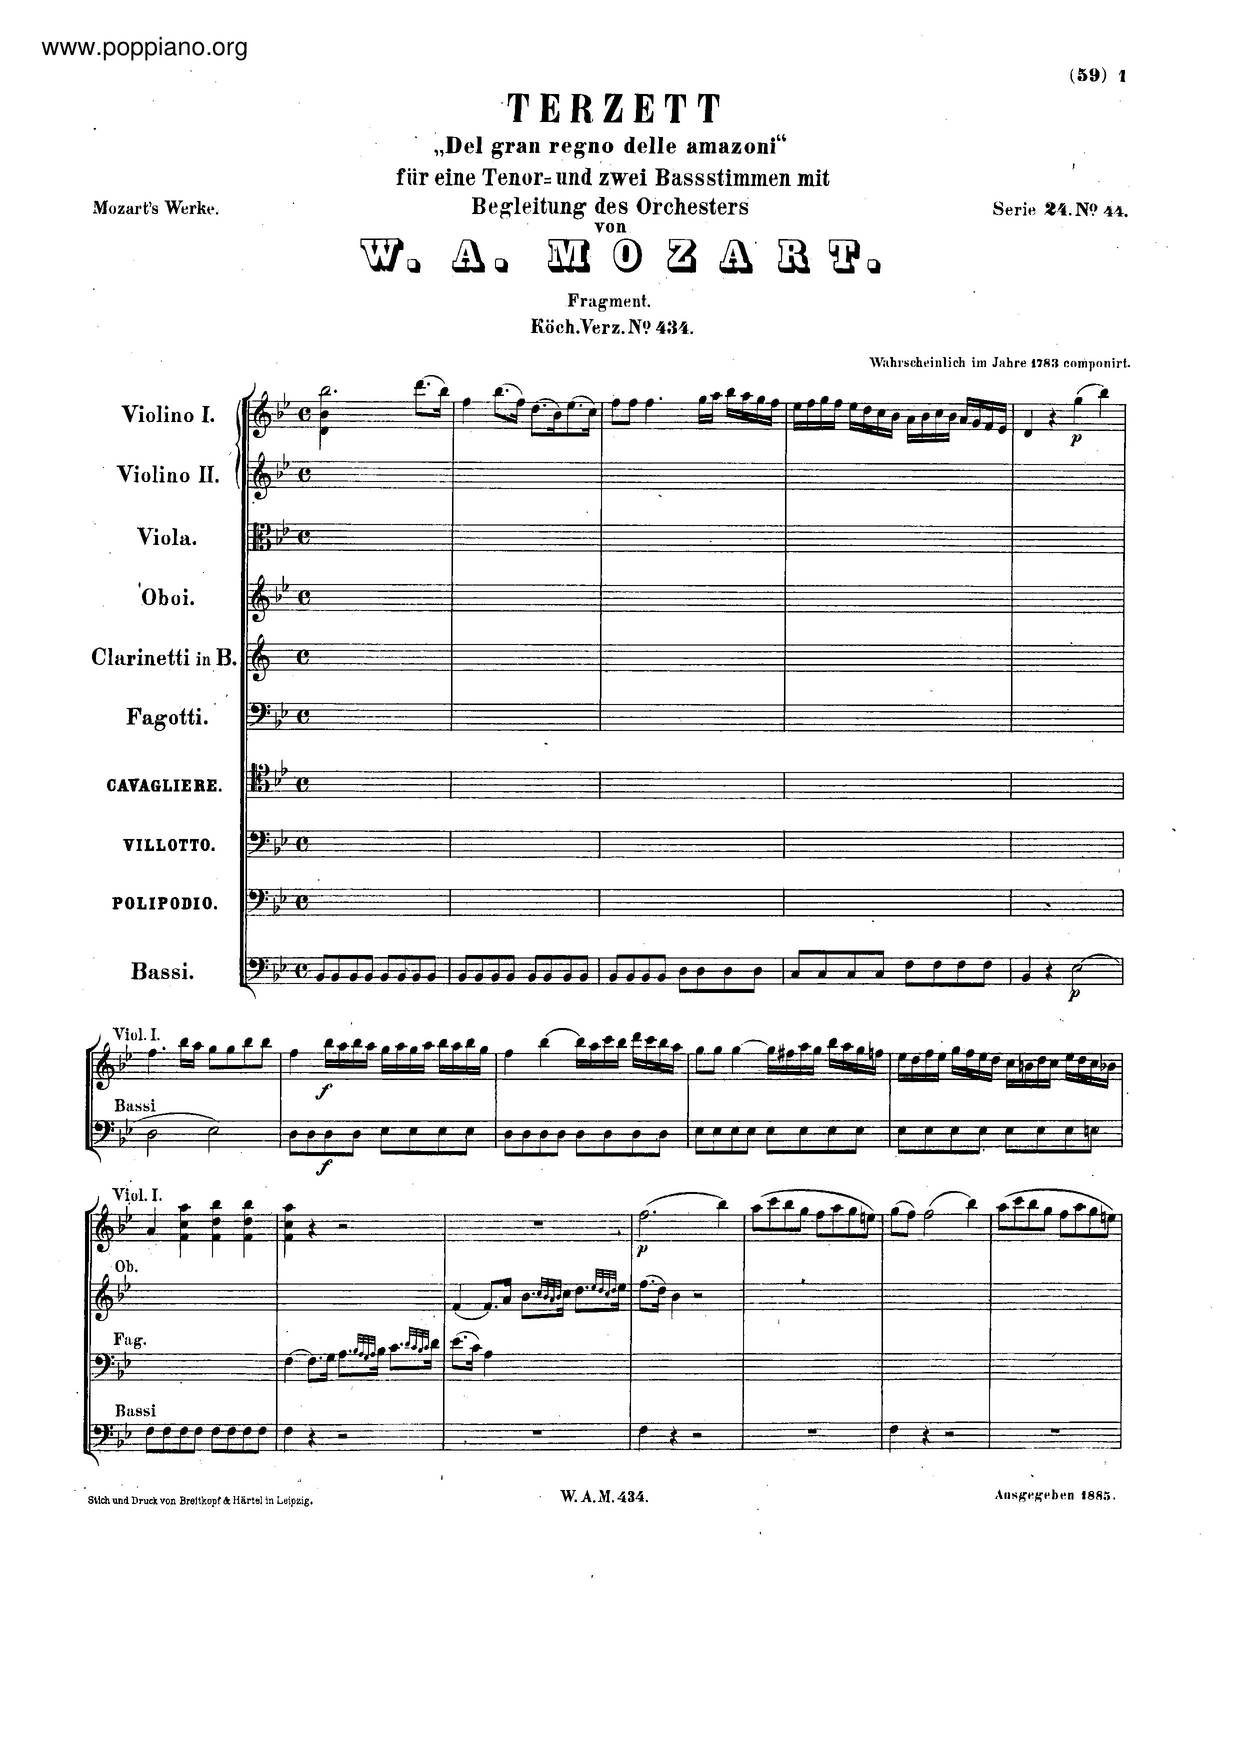 Del Gran Regno Delle Amazoni, K. 434/480Bピアノ譜